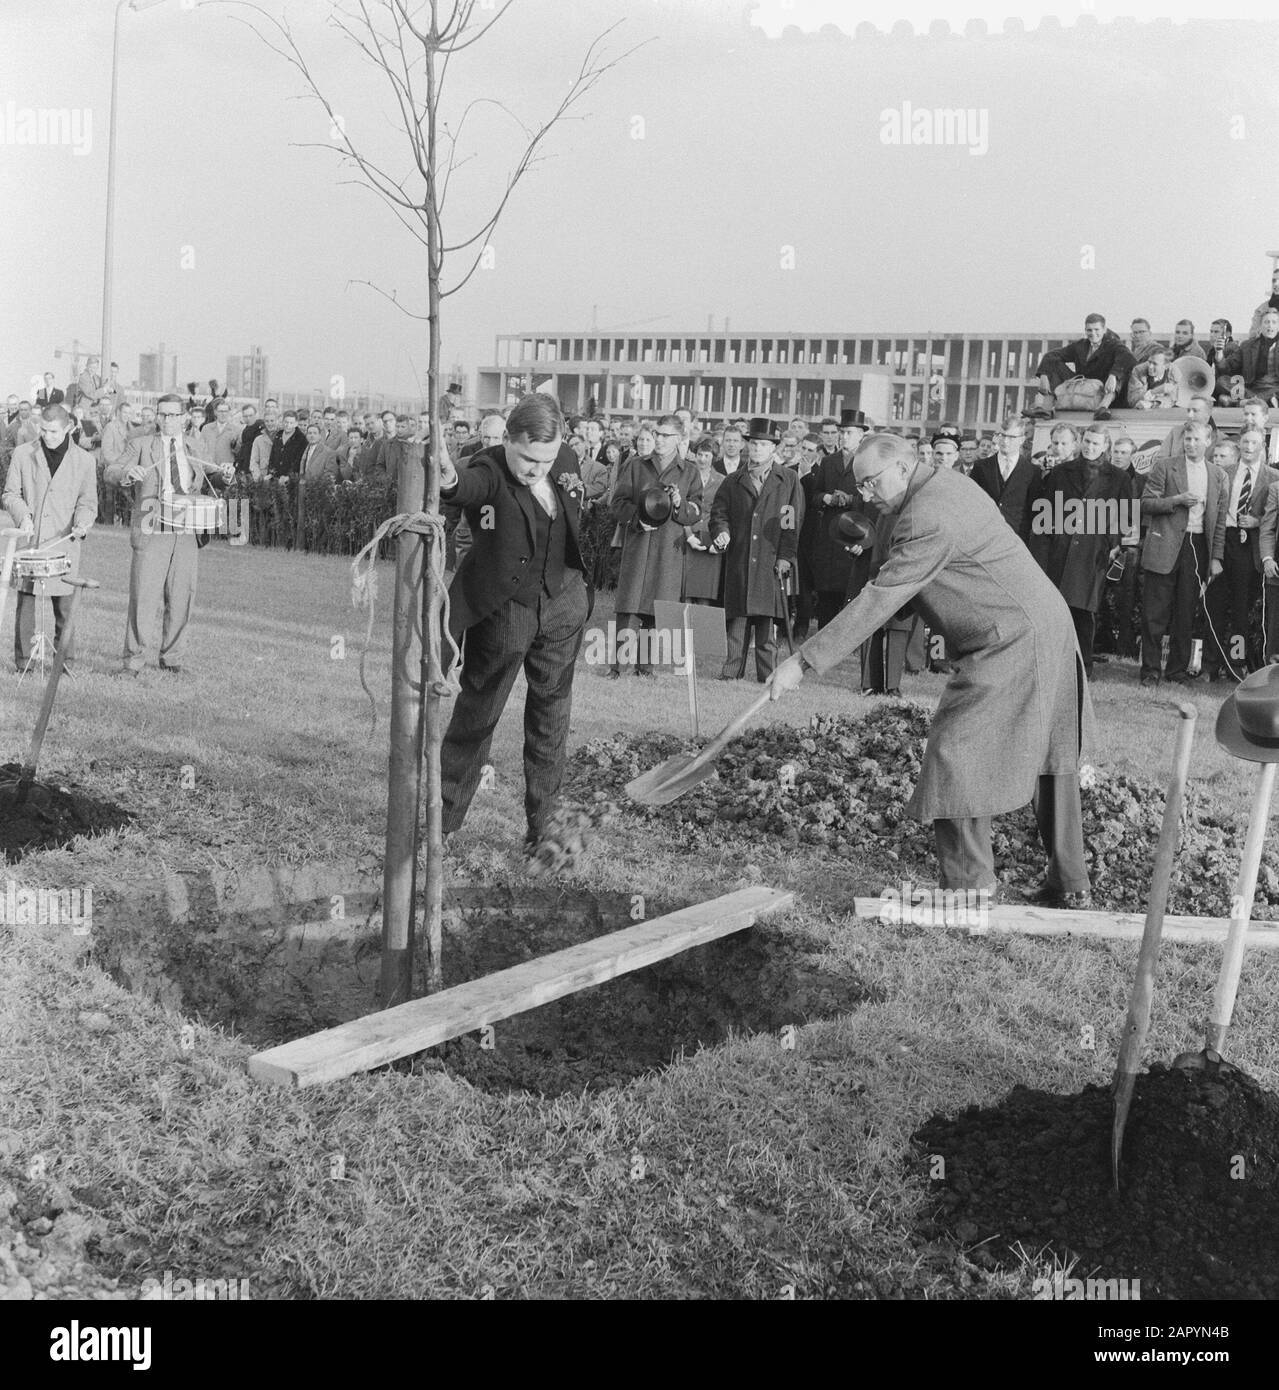 Pflanzen der Freiheit Baum von Studenten in Delft Datum: 15. Oktober 1960 Ort: Delft, Zuid-Holland Schlüsselwörter: Pflanzen, STUDENTEN Stockfoto